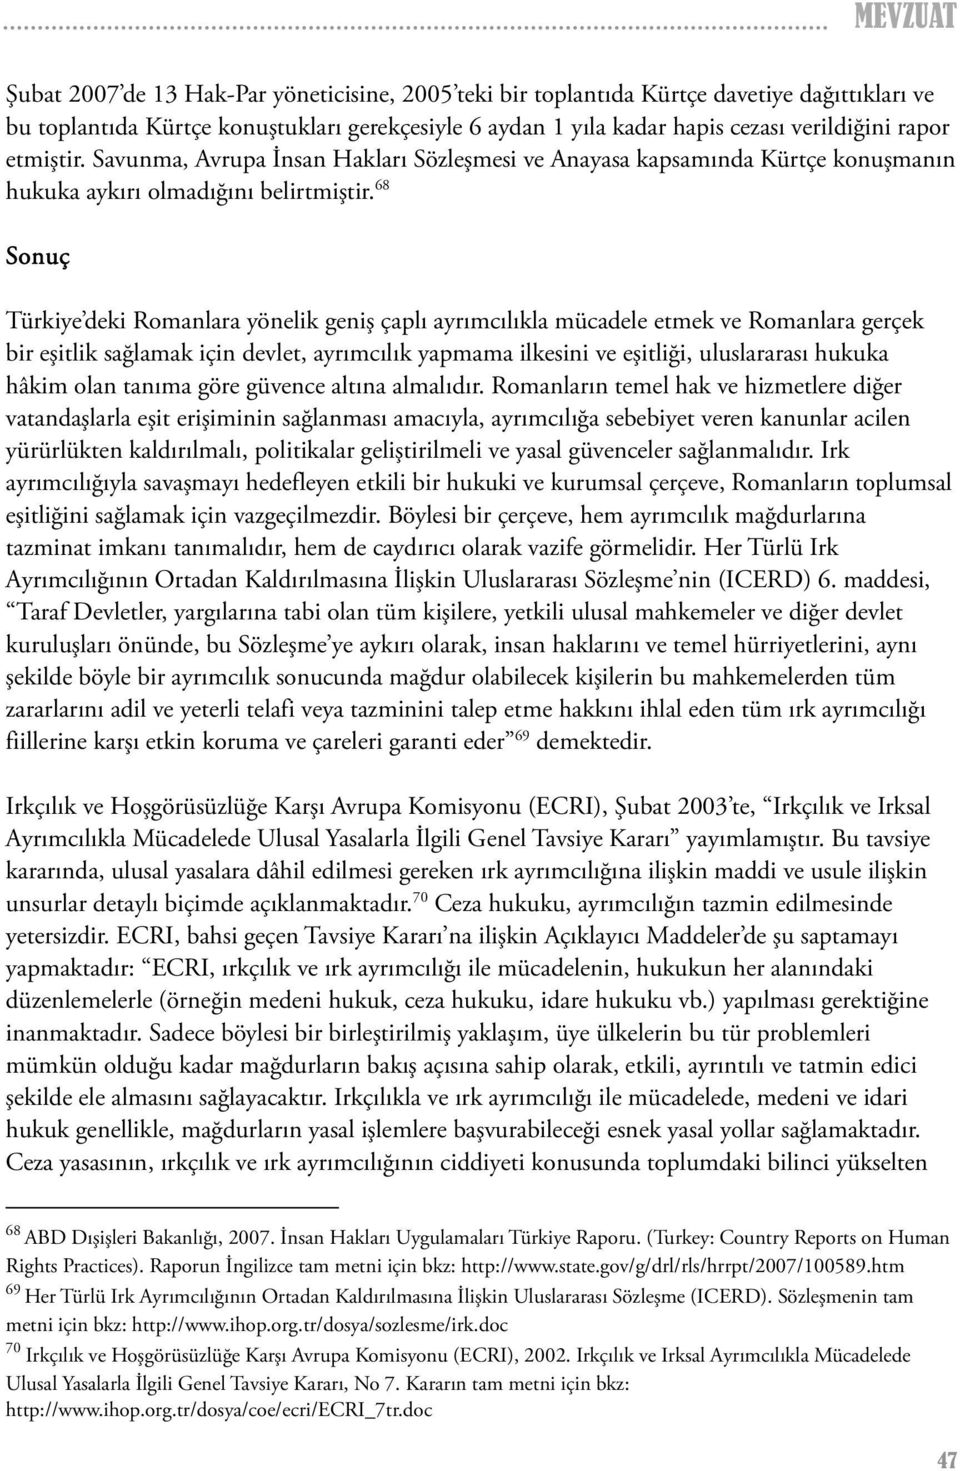 68 Sonuç Türkiye deki Romanlara yönelik geniş çaplı ayrımcılıkla mücadele etmek ve Romanlara gerçek bir eşitlik sağlamak için devlet, ayrımcılık yapmama ilkesini ve eşitliği, uluslararası hukuka